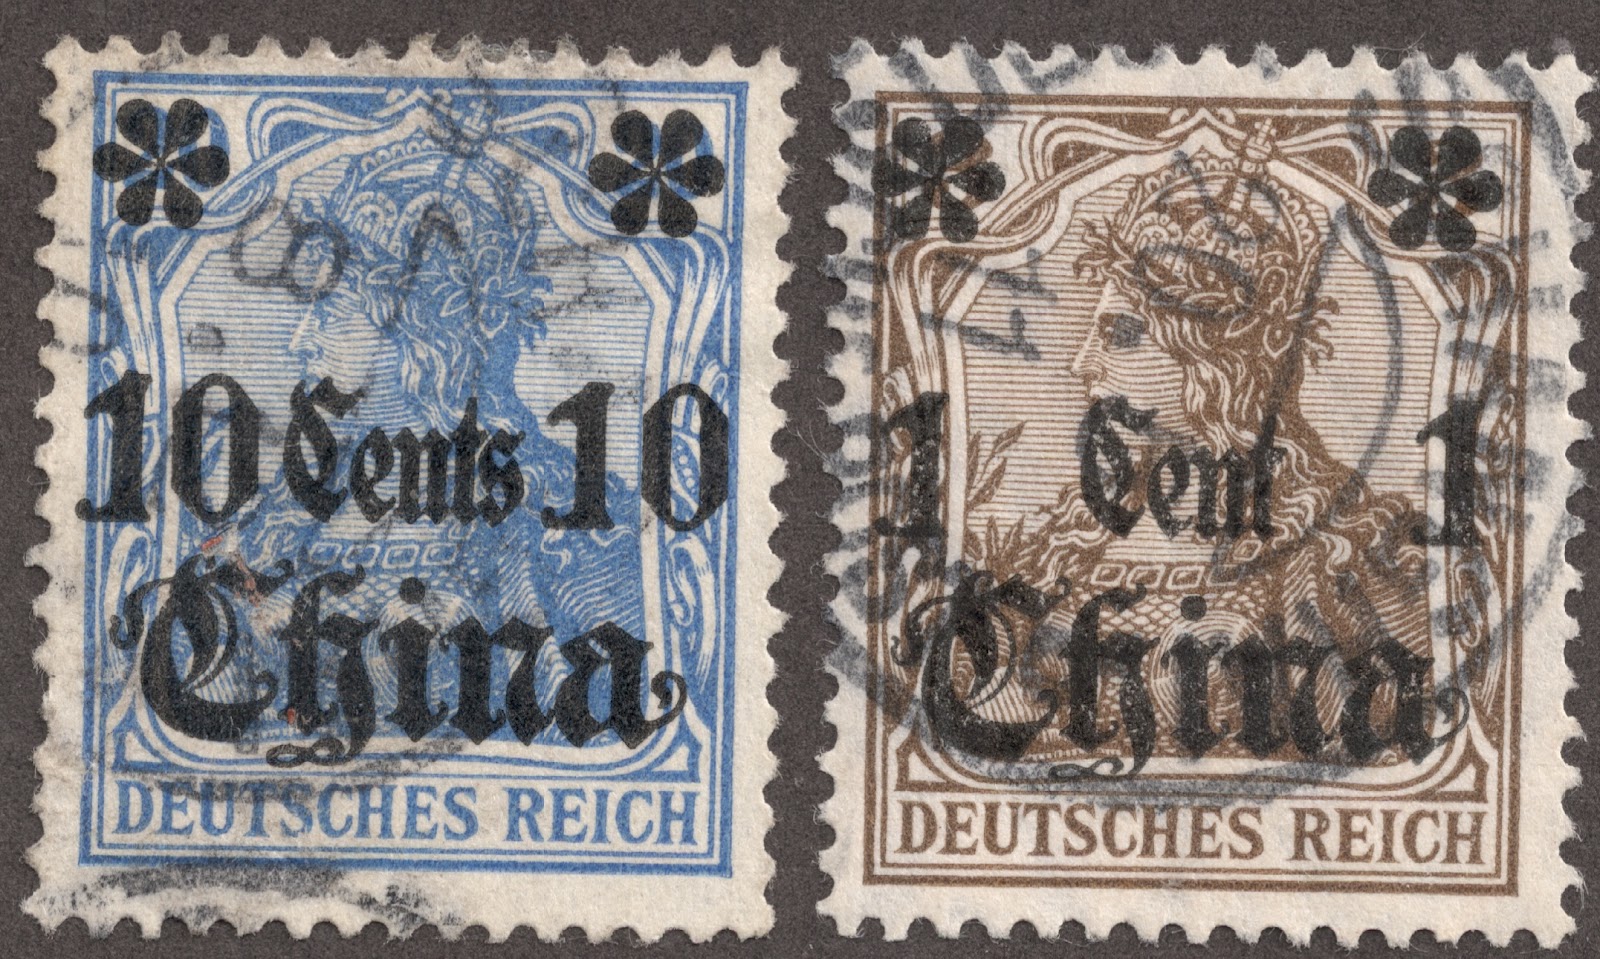 Belgium - 1952 Writers - Set of 6 Semi-Postal Stamps #B515-20